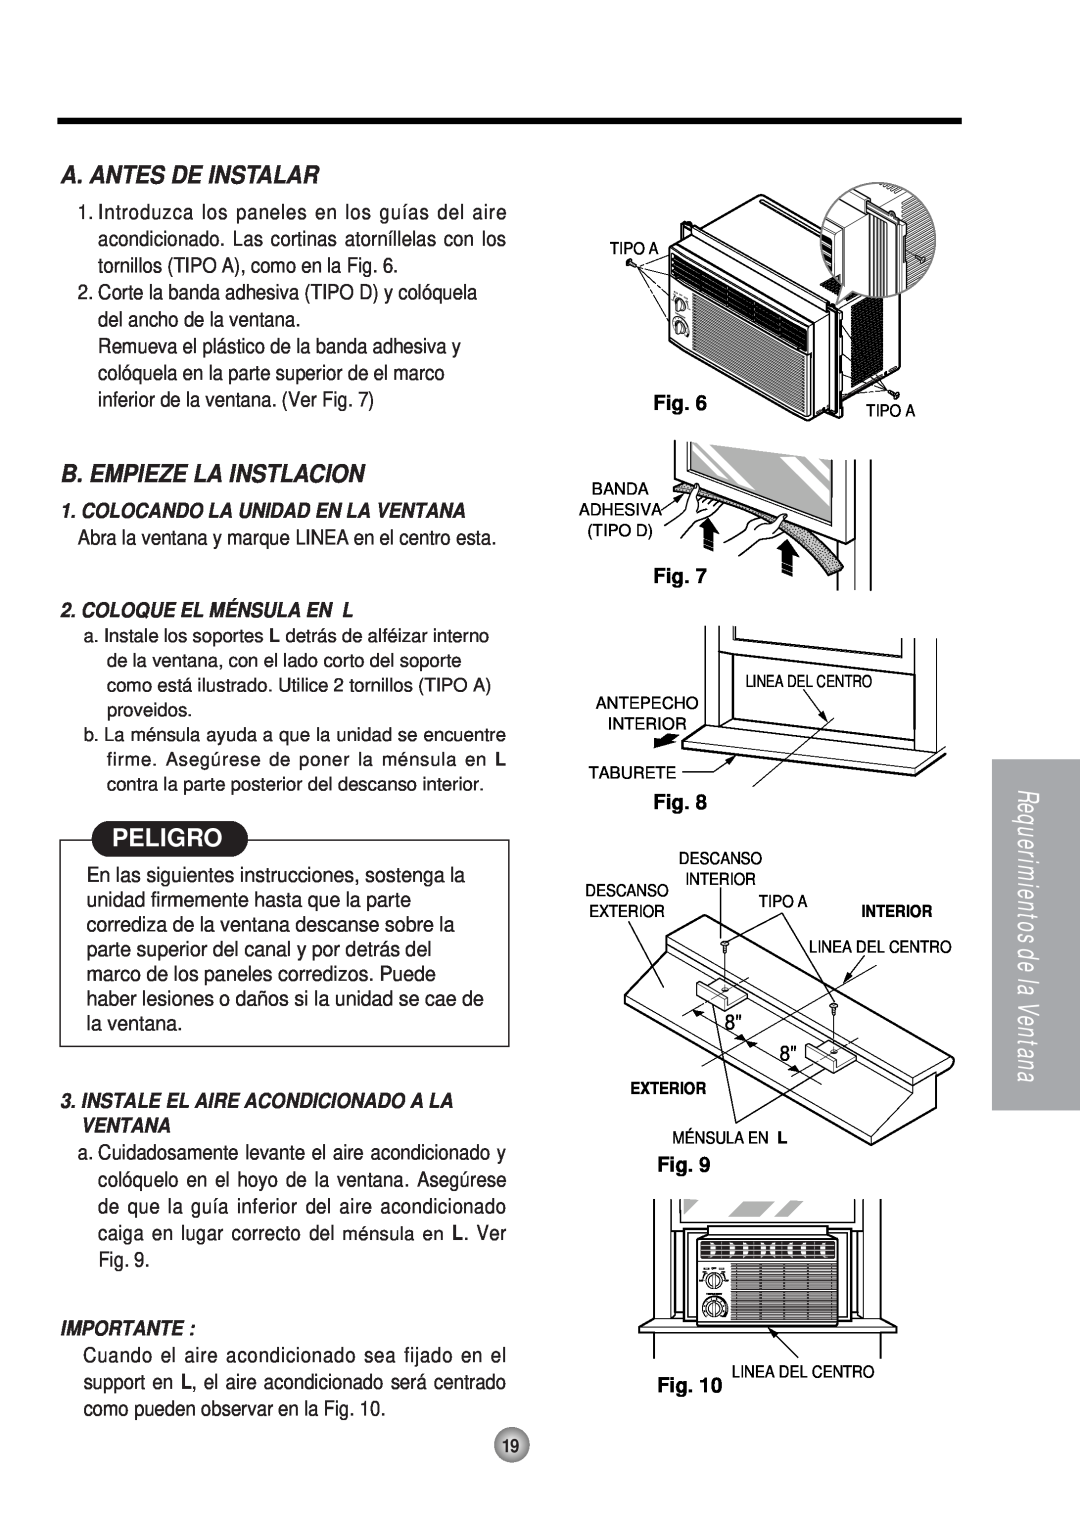 Panasonic HQ-2051RH manual A. Antes De Instalar, B. Empieze La Instlacion, Peligro, Coloque El Ménsula En L, Importante 